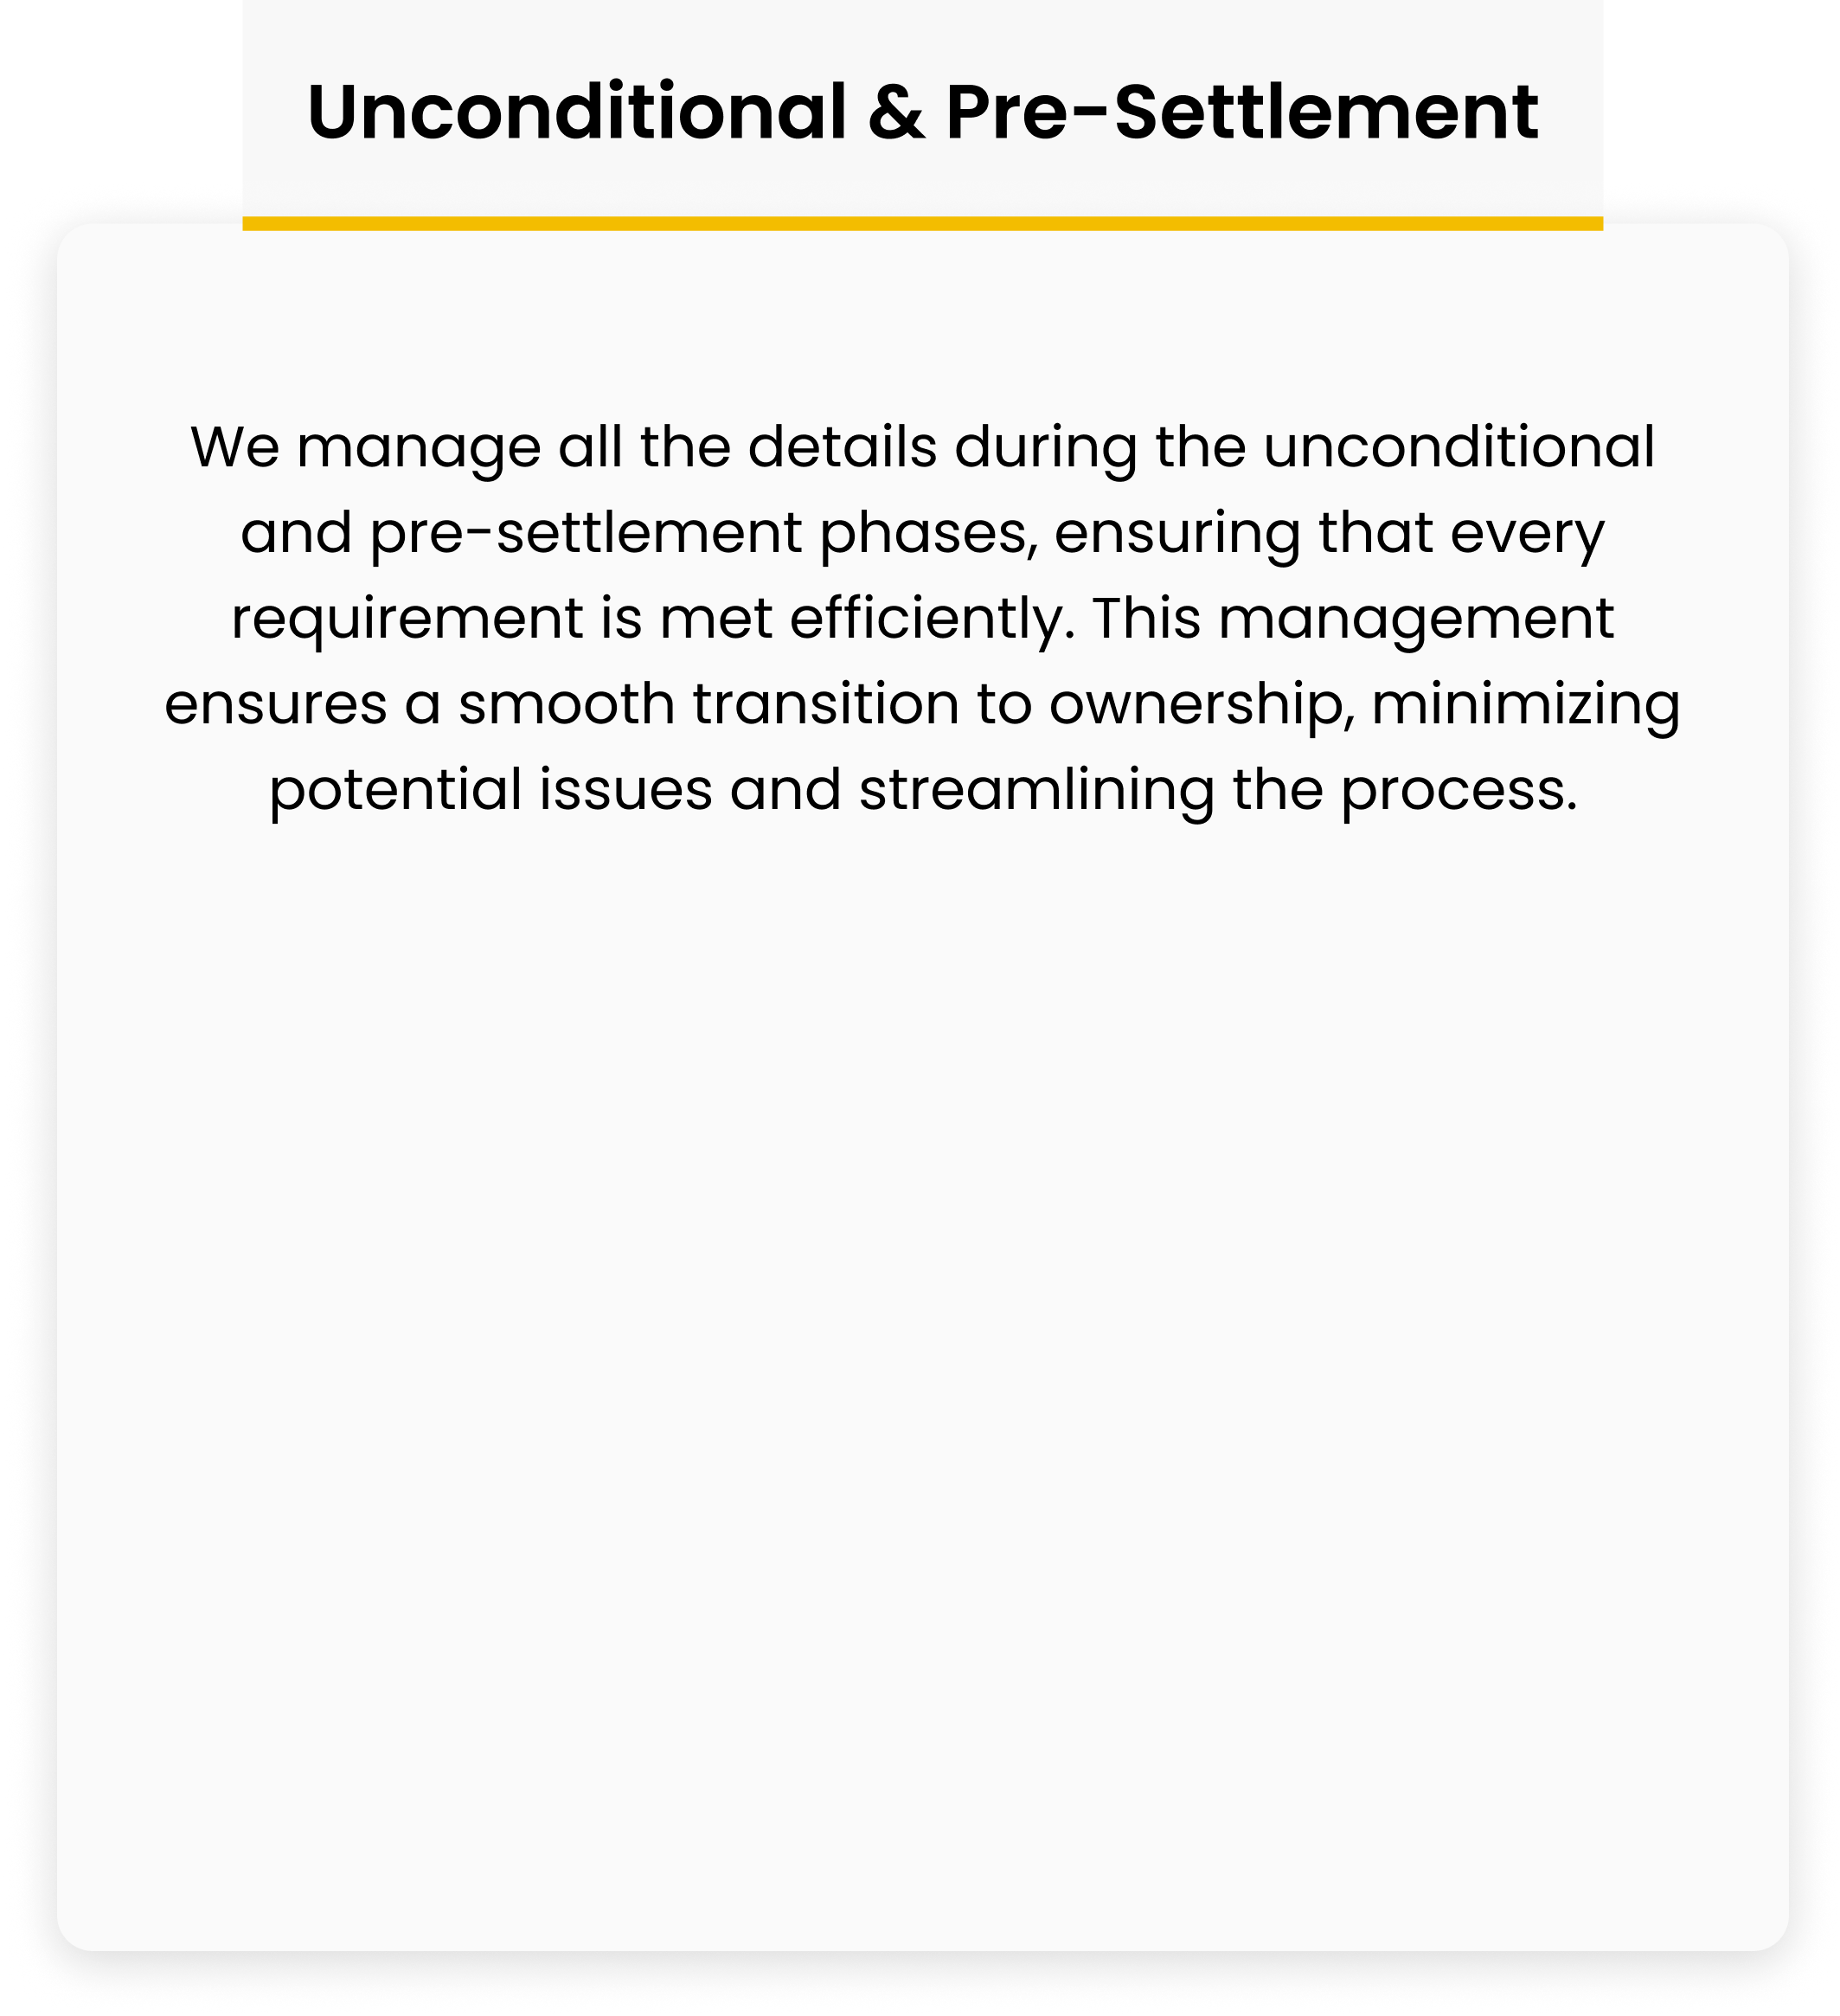 Unconditional & Pre-Settlement